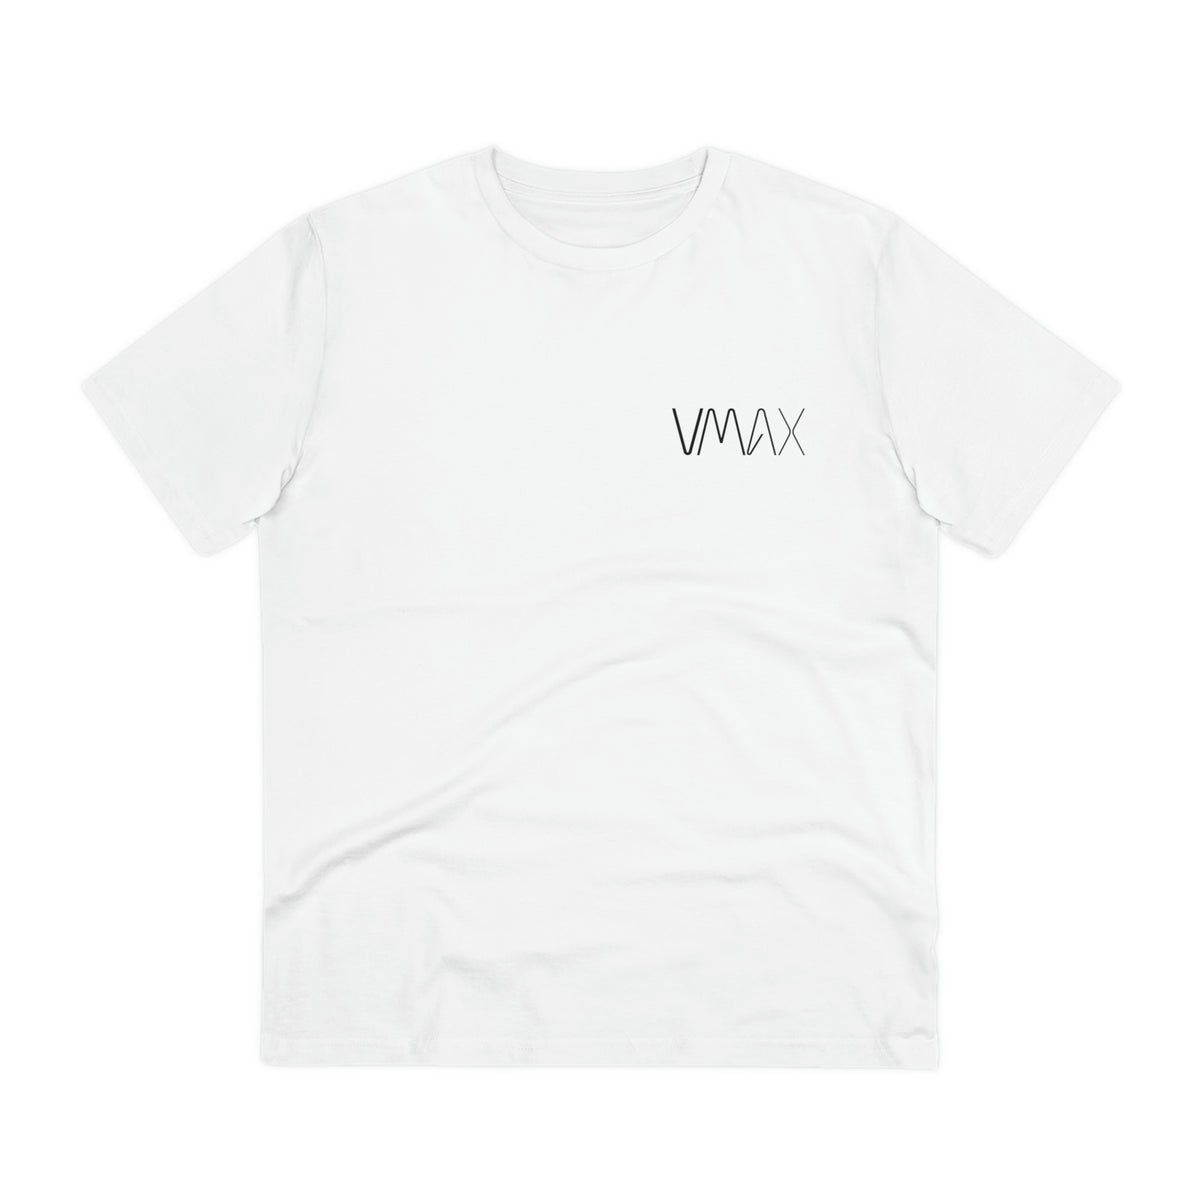 VMAX Eco T-Shirt Unisex